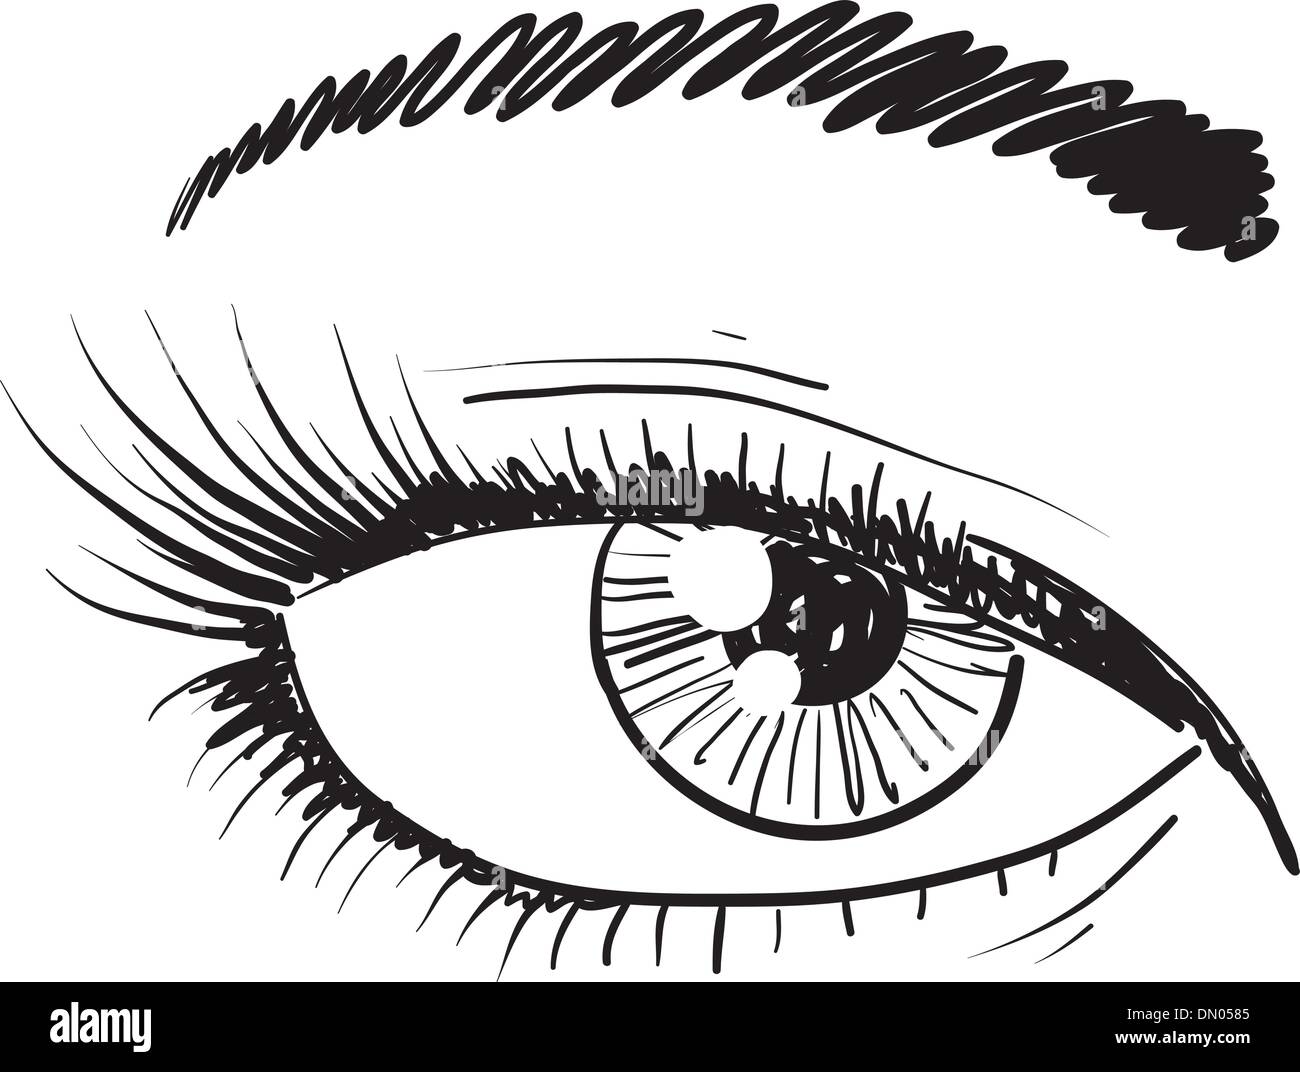 Human eye vector sketch Stock Vector